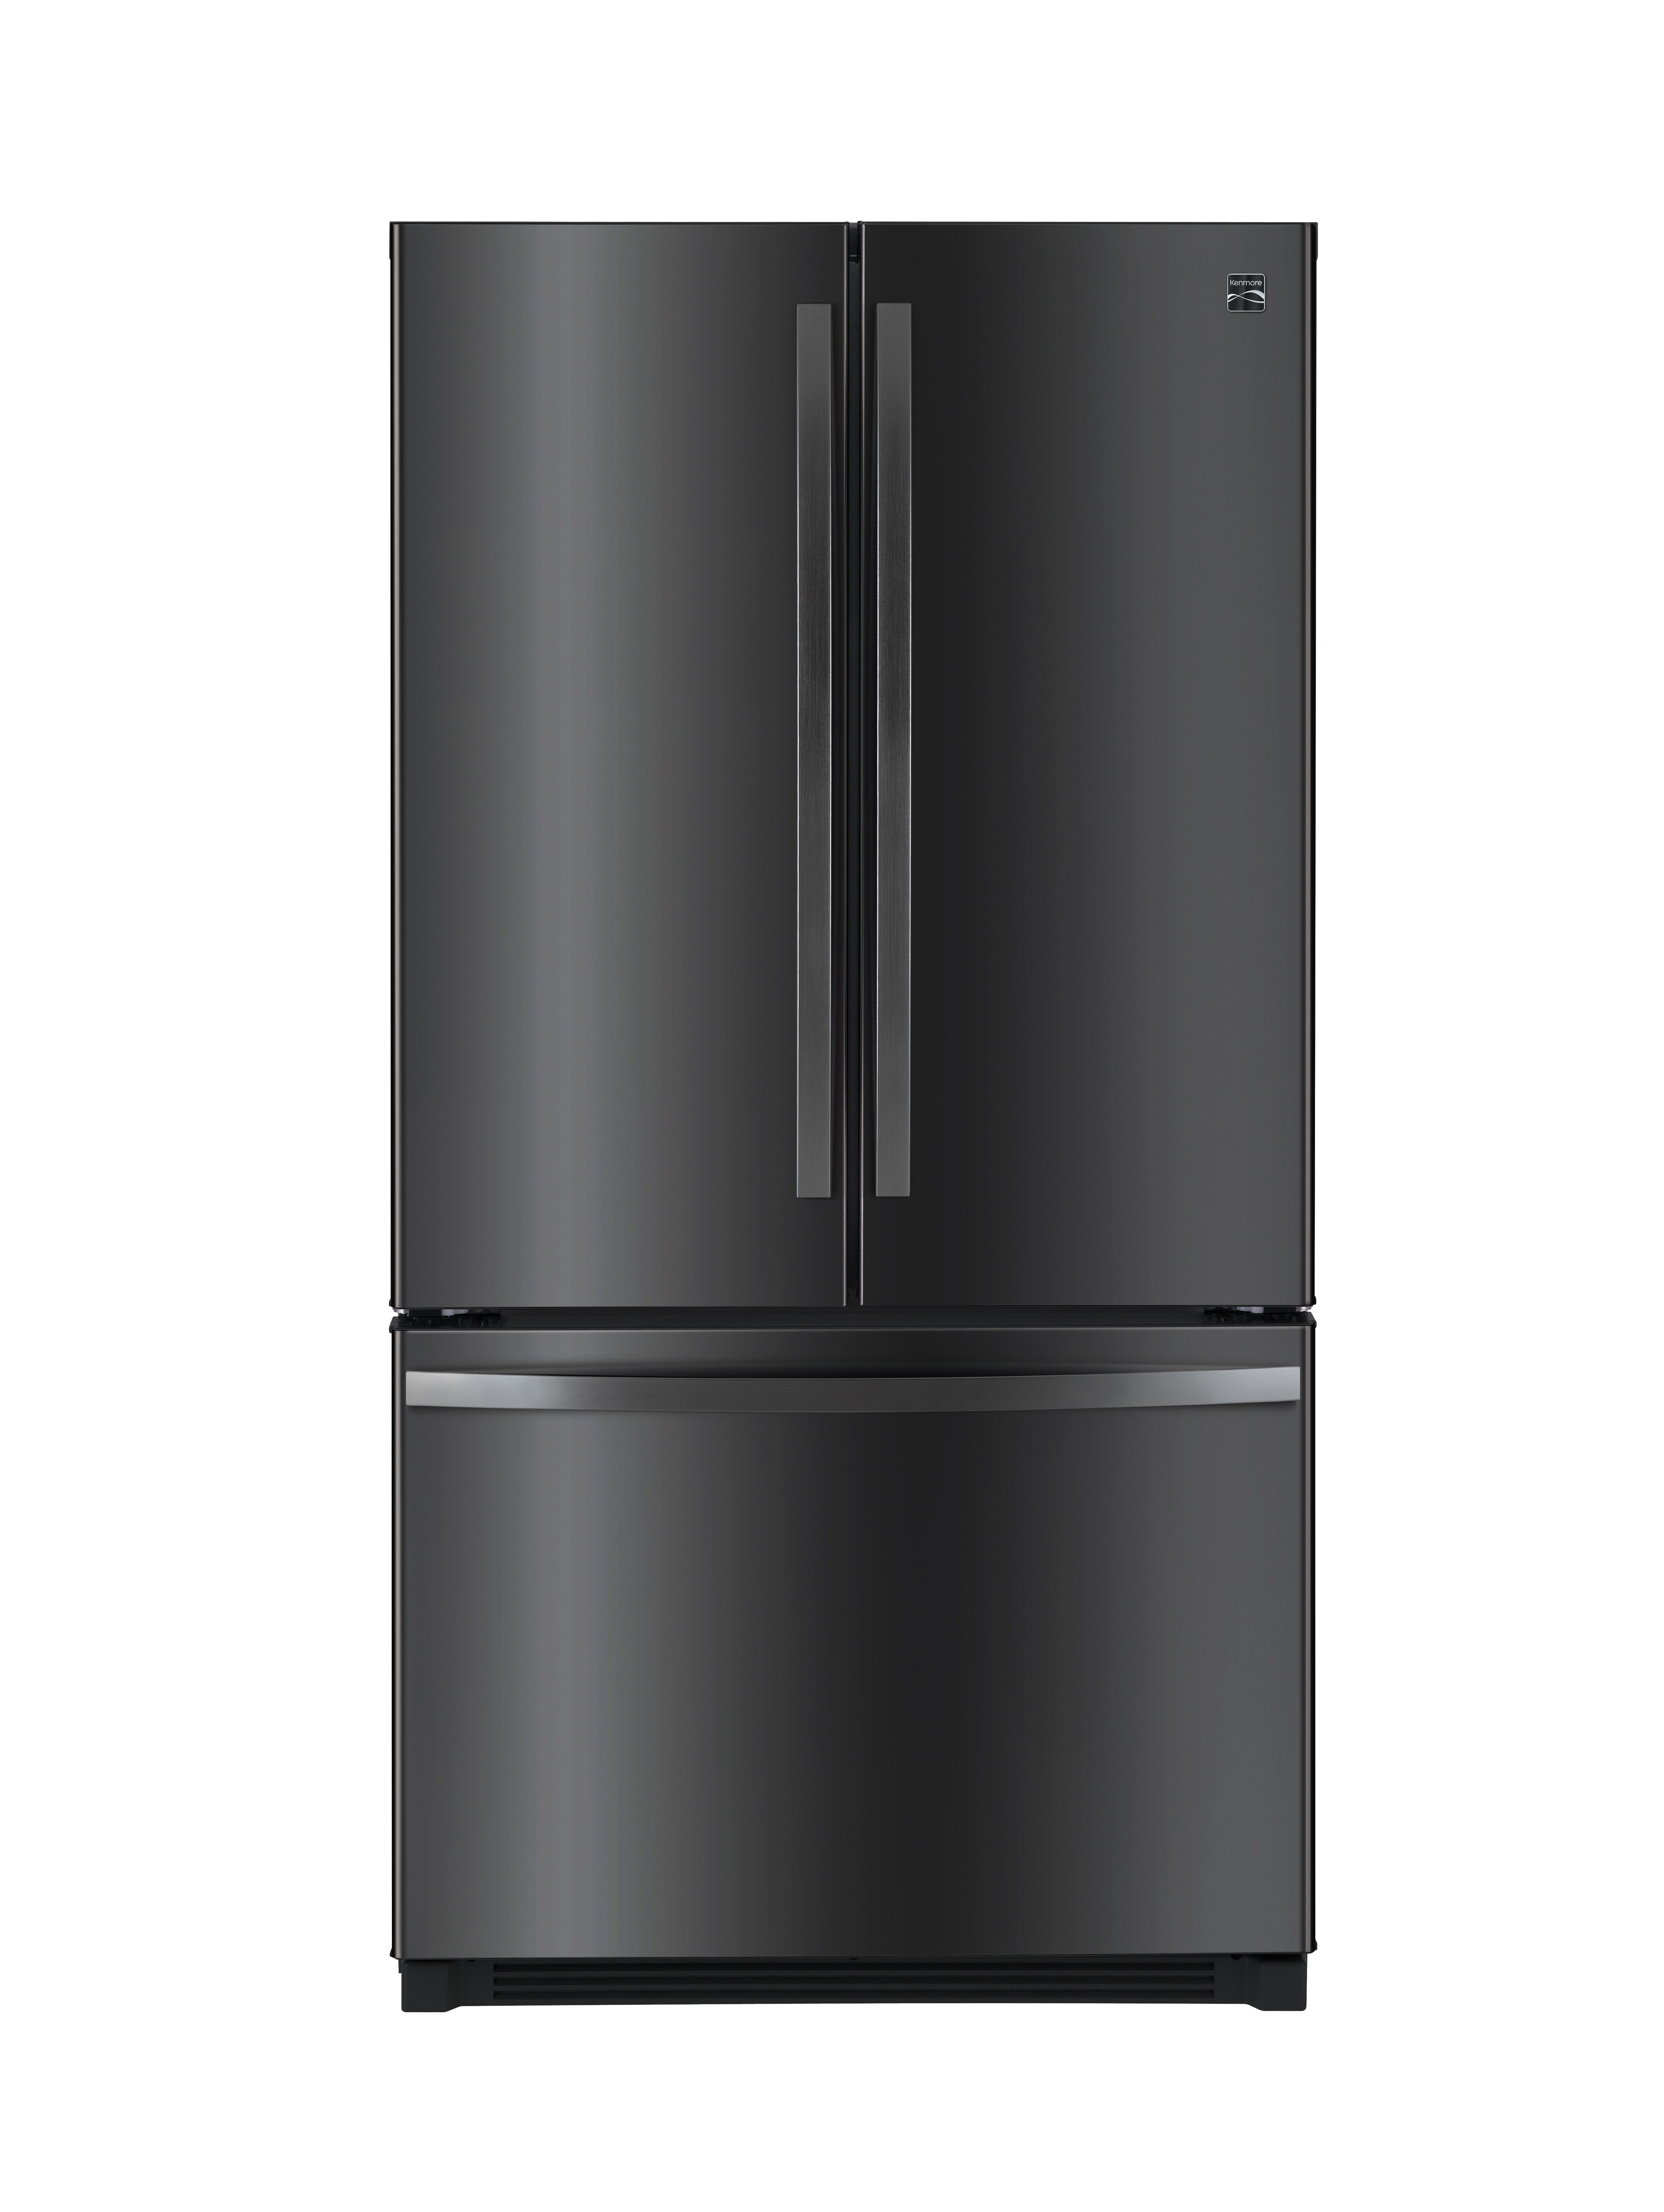 Kenmore 73027 26.1 cu. ft. French Door Refrigerator – Black Stainless Steel Kenmore Black Stainless Steel Refrigerator